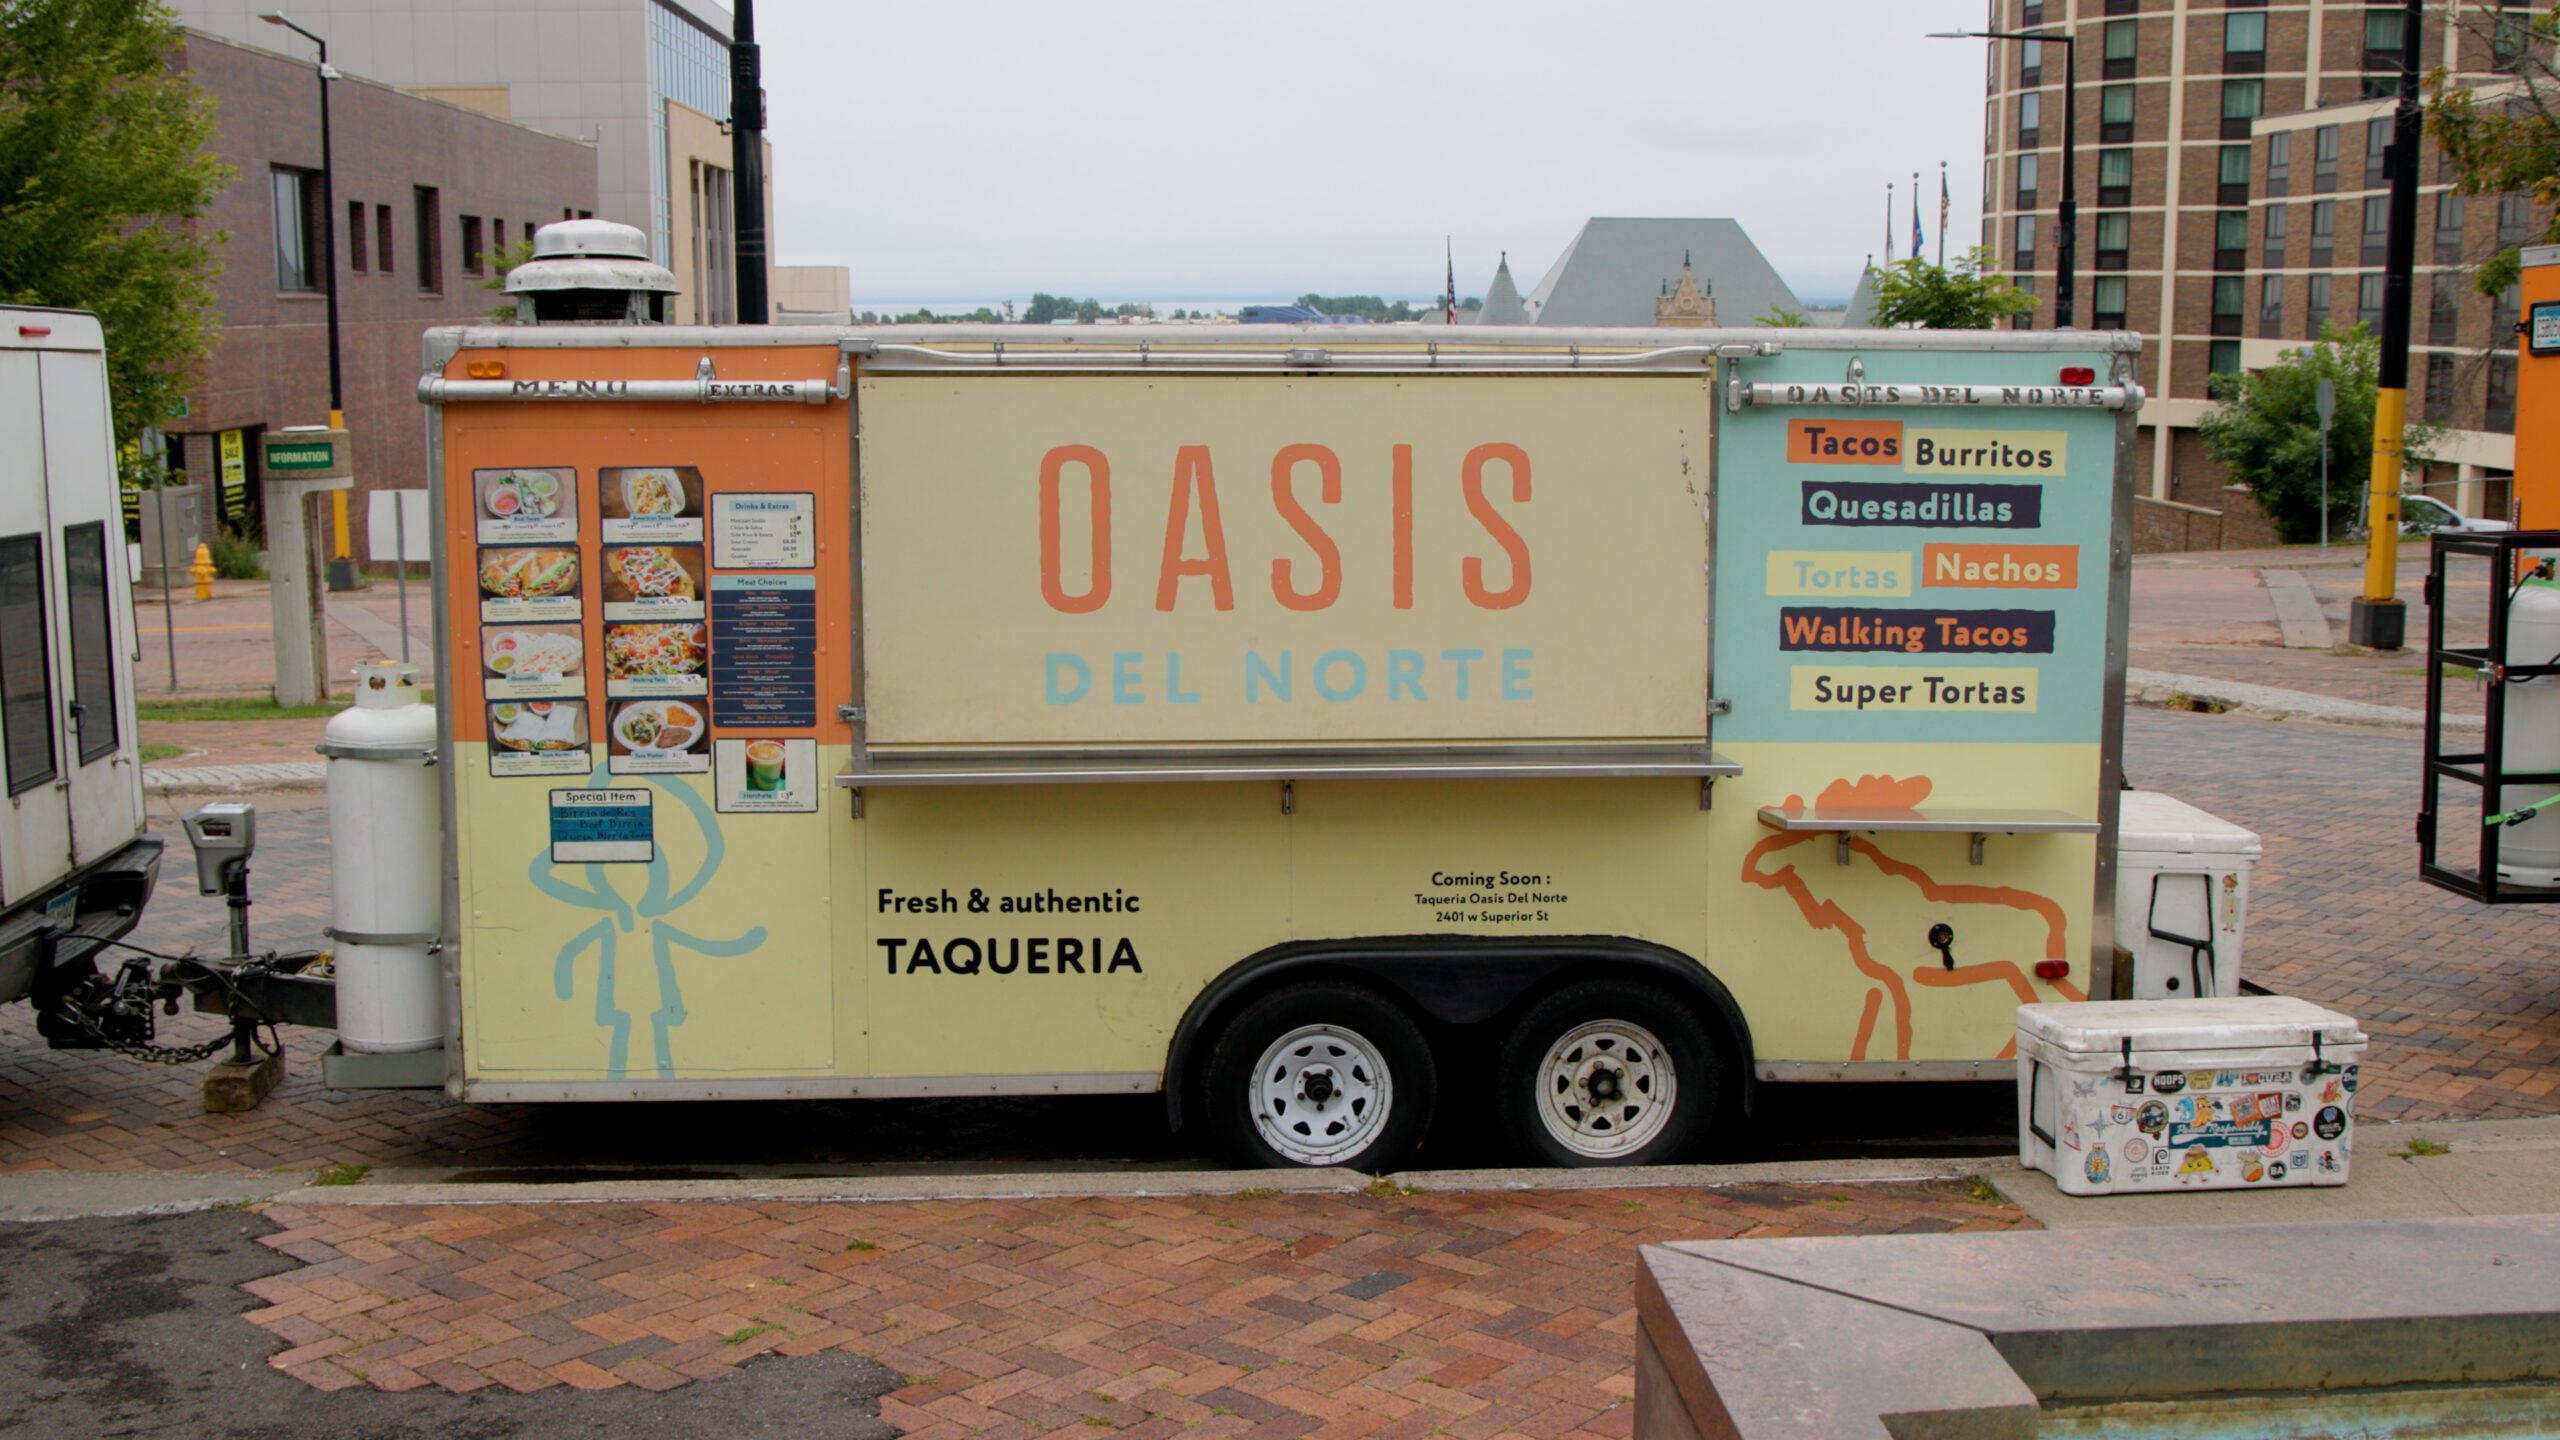 The Oasis Del Norte food trailer